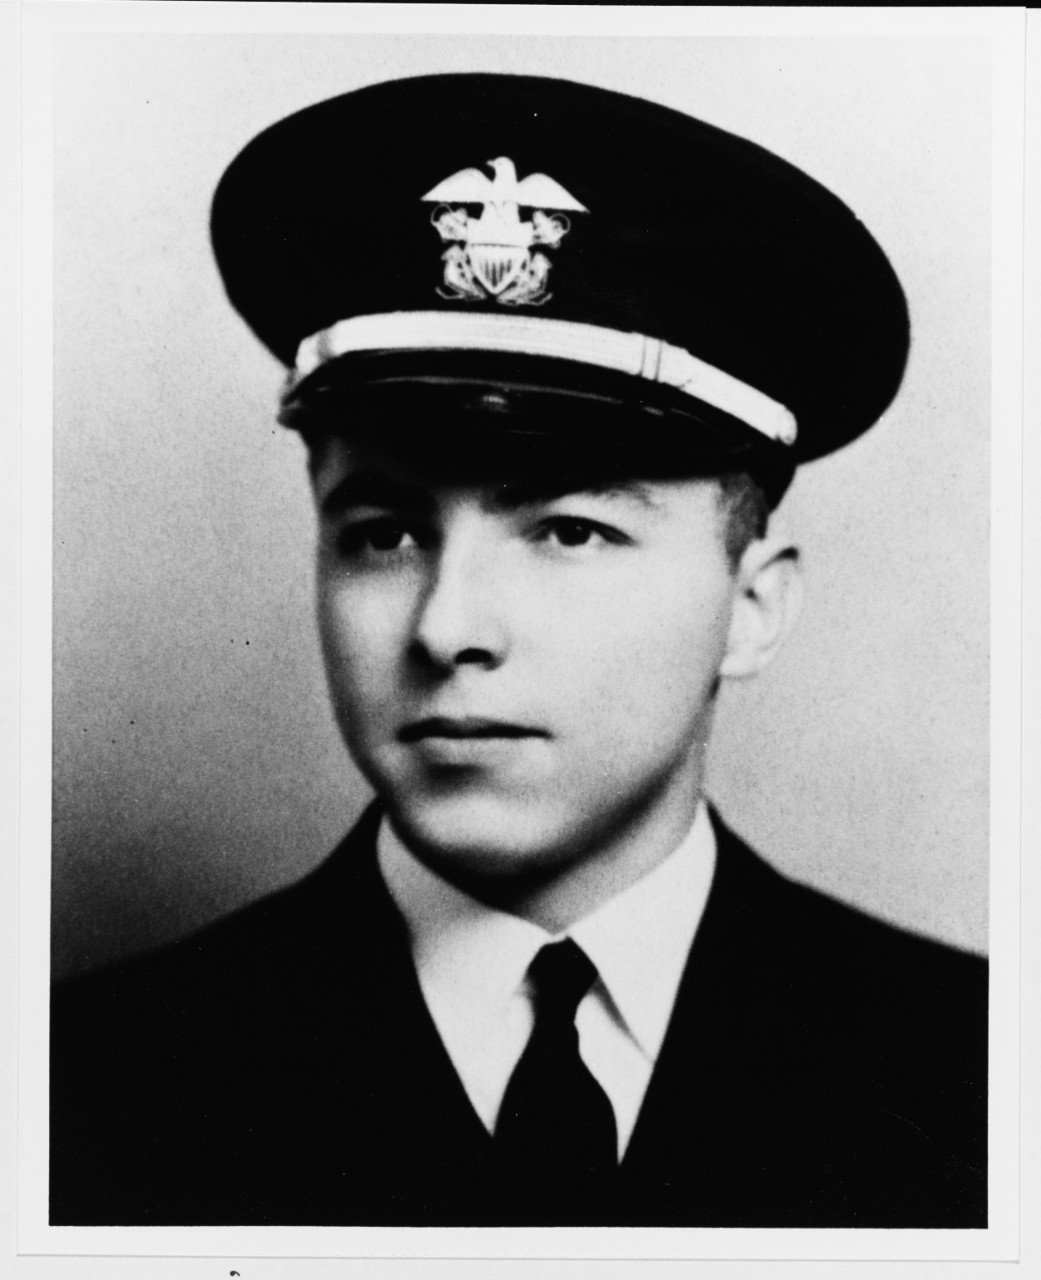 Ensign Robert E. Brister, USNR (1920-1942)